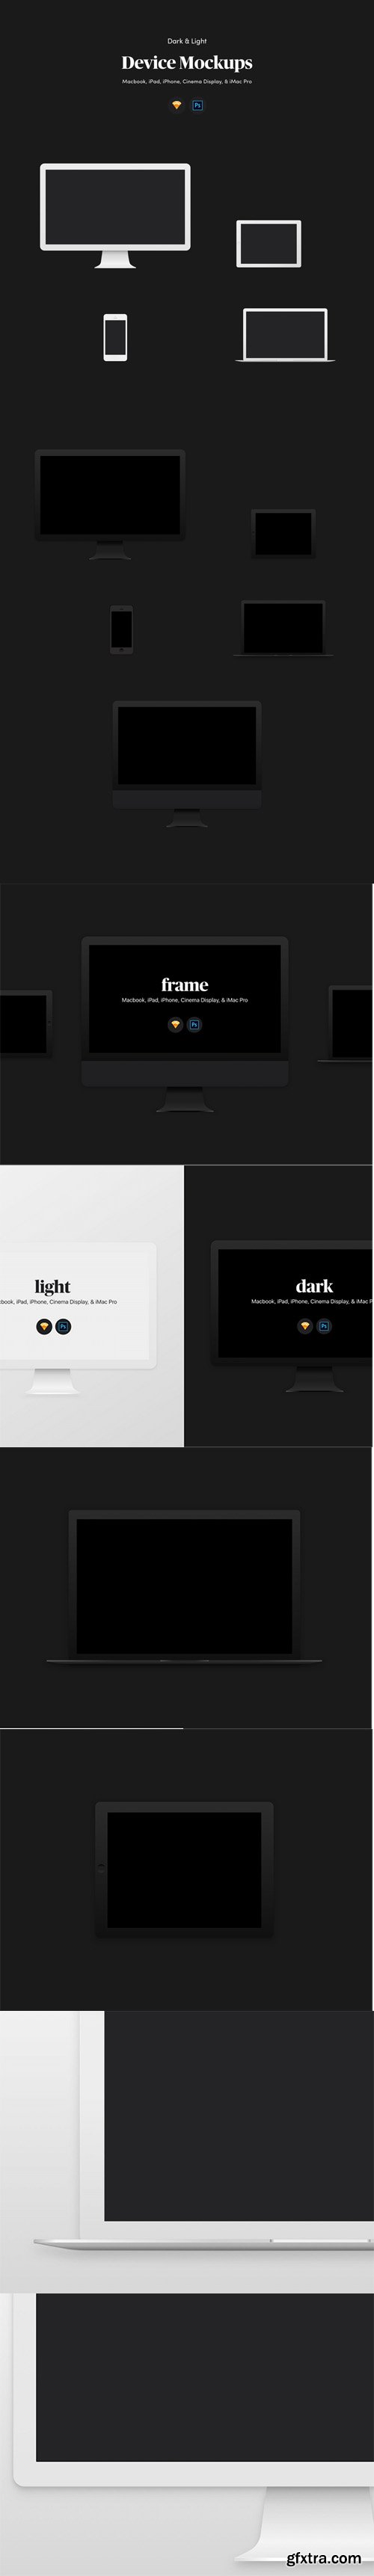 Dark & Light Device Mockups - Elegant dark and light Apple device mockups for Photoshop & Sketch